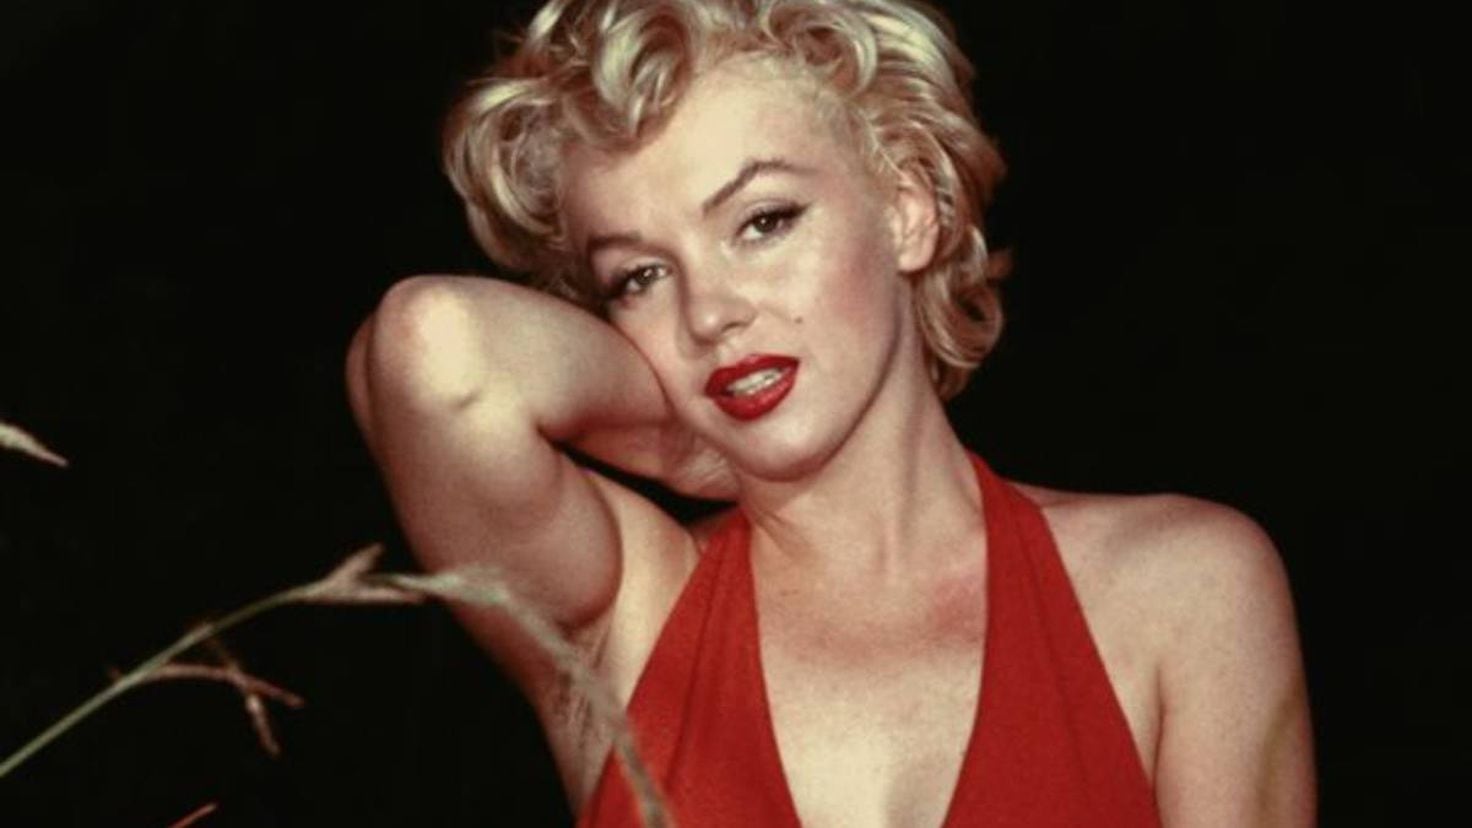 Una prueba de ADN confirma quién es el padre de Marilyn Monroe 60 años  después de su muerte - Tikitakas